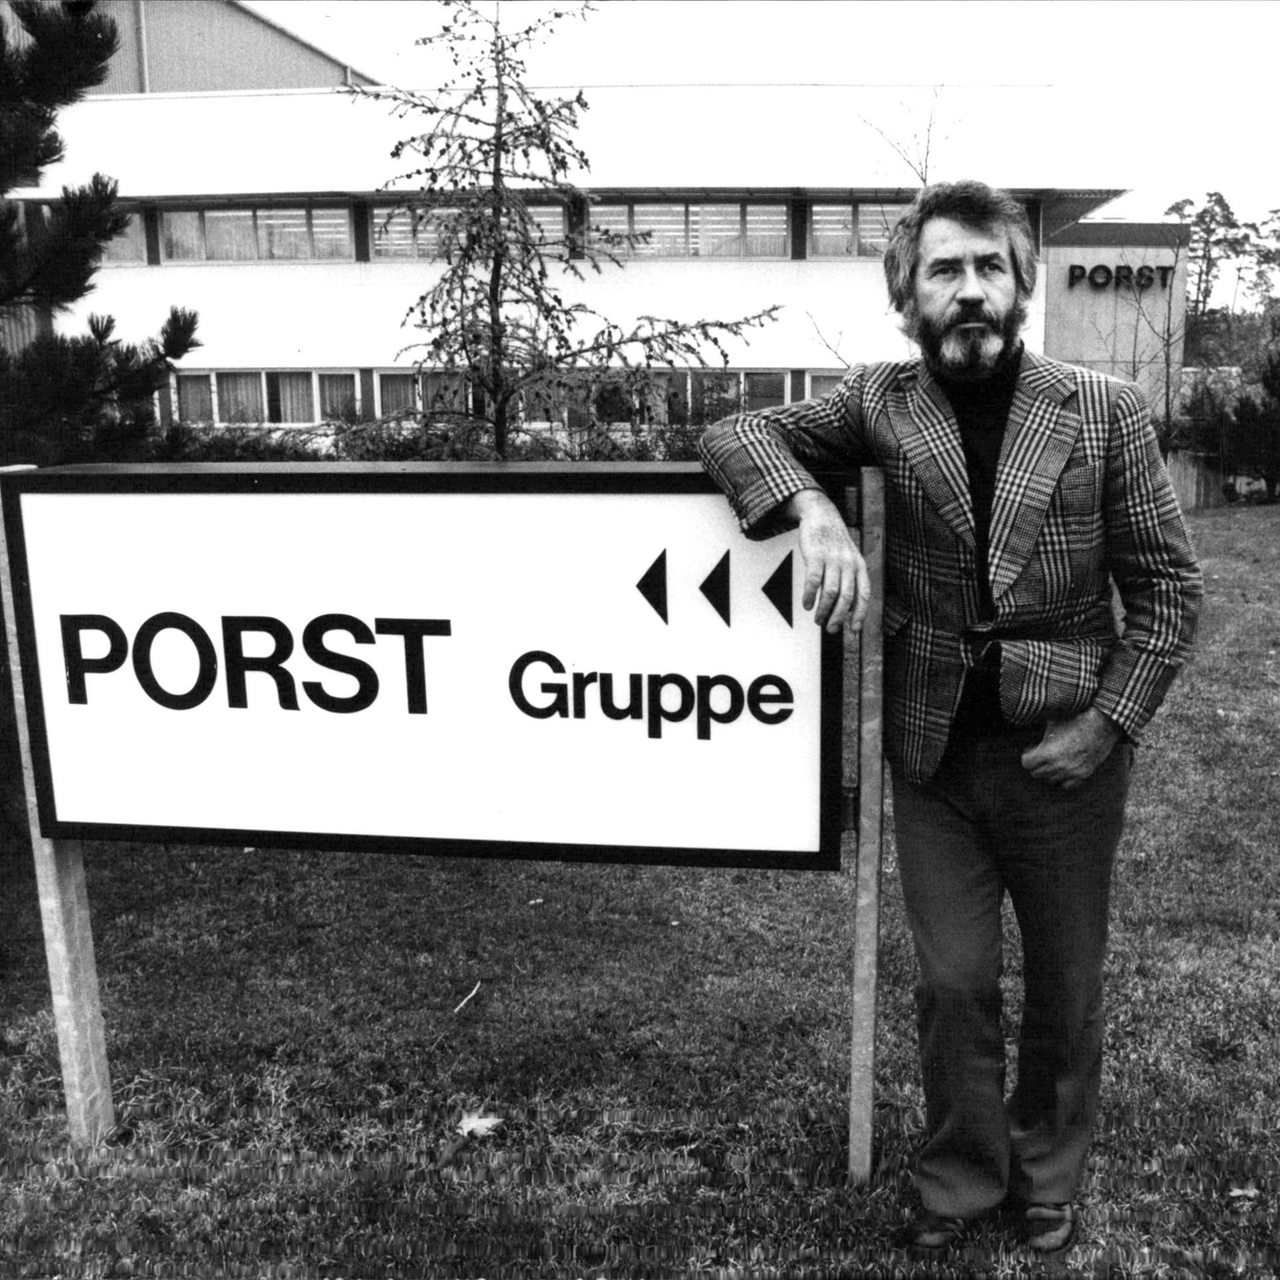 Der deutsche Unternehmer Hannsheinz Porst am Schild der Gruppe Porst. Hannsheinz Porst war lange Jahre Eigentümer der Fotohandelskette Photo Porst.